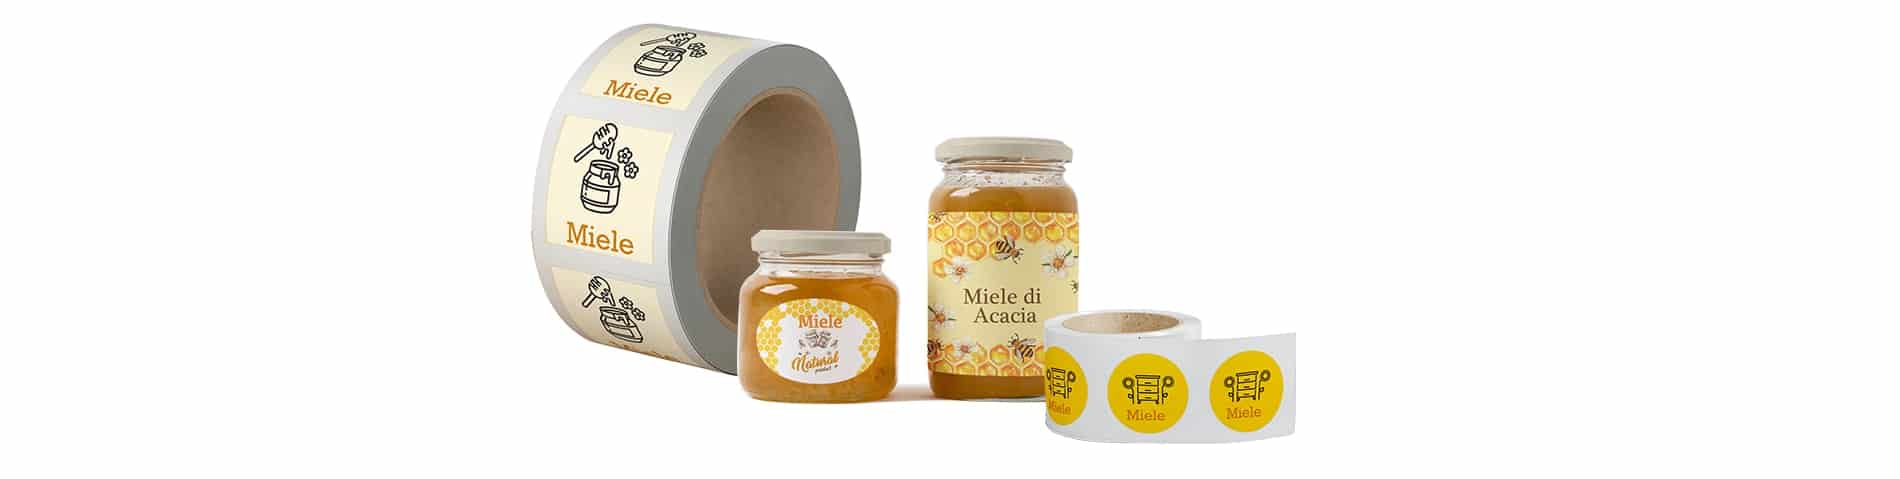 Stampa etichette miele